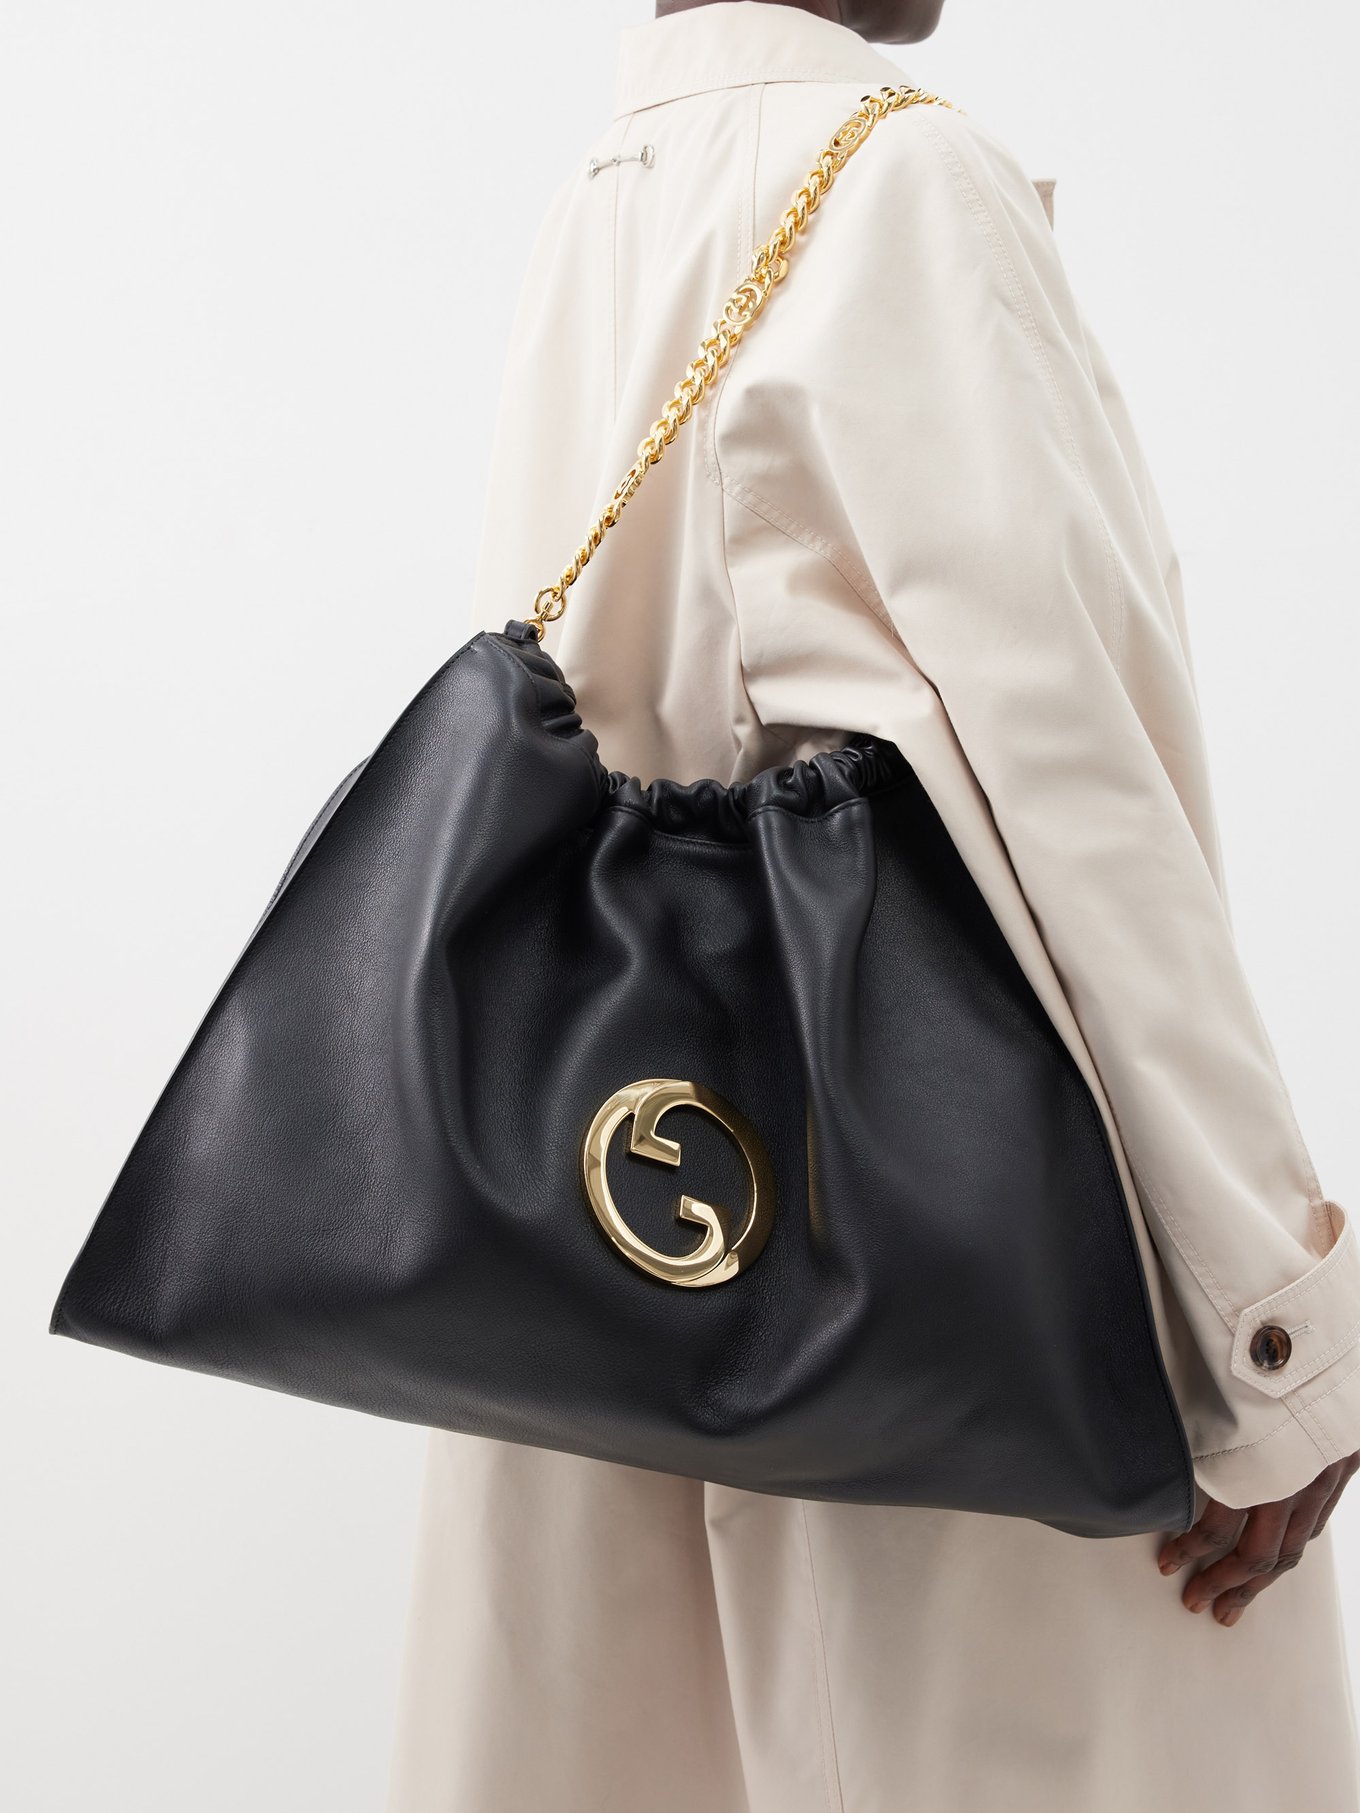 Black Blondie leather shoulder bag, Gucci